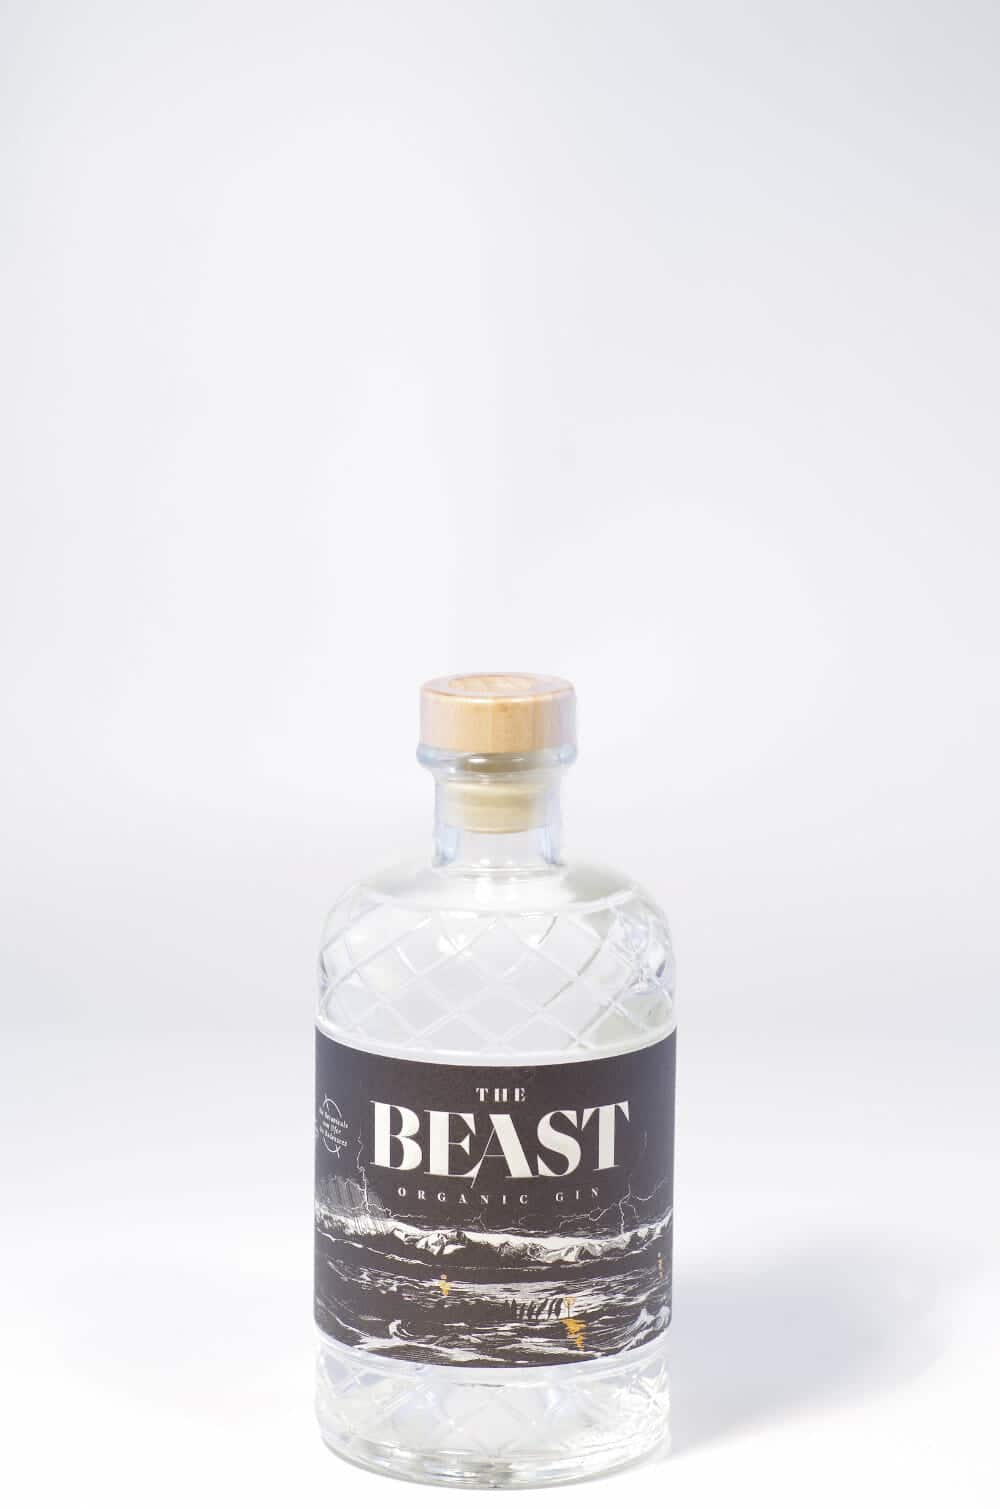 The Beast Organic Gin